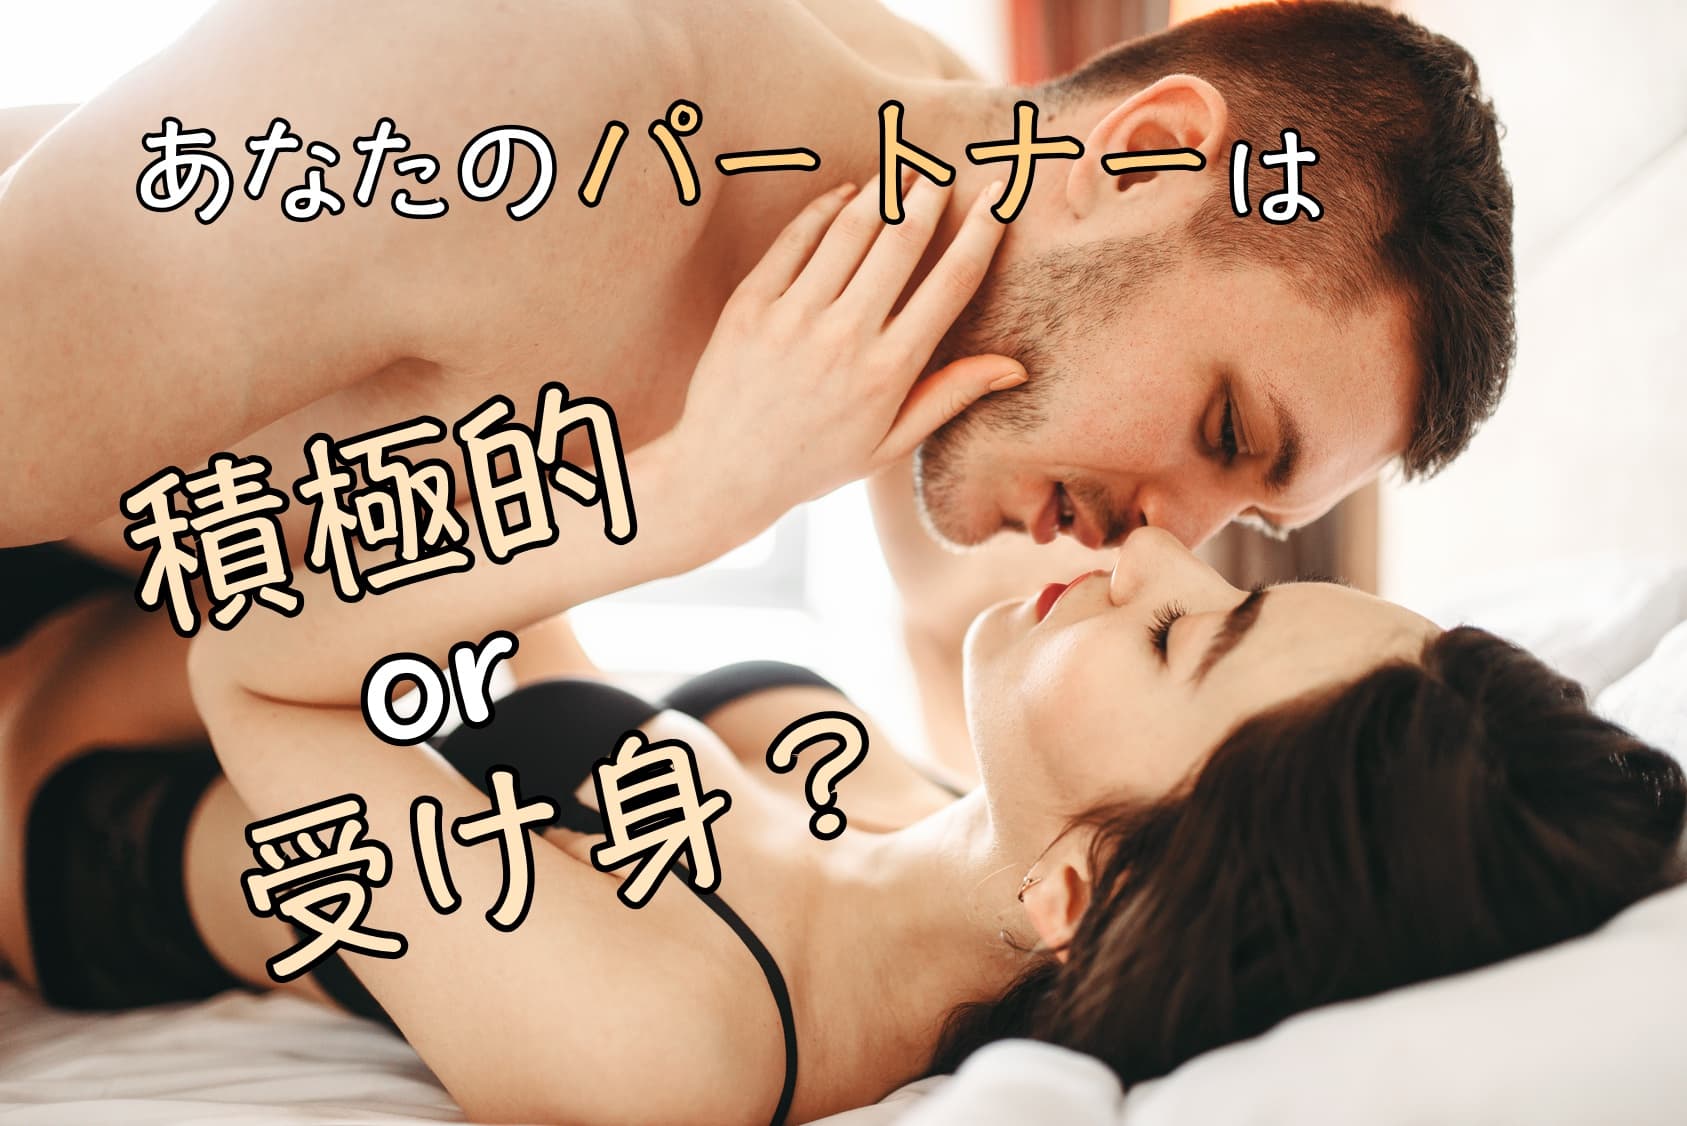 ベッドに寝そべる裸の女性の背中に男性がうっとりと目をつぶりながらキスしている画像